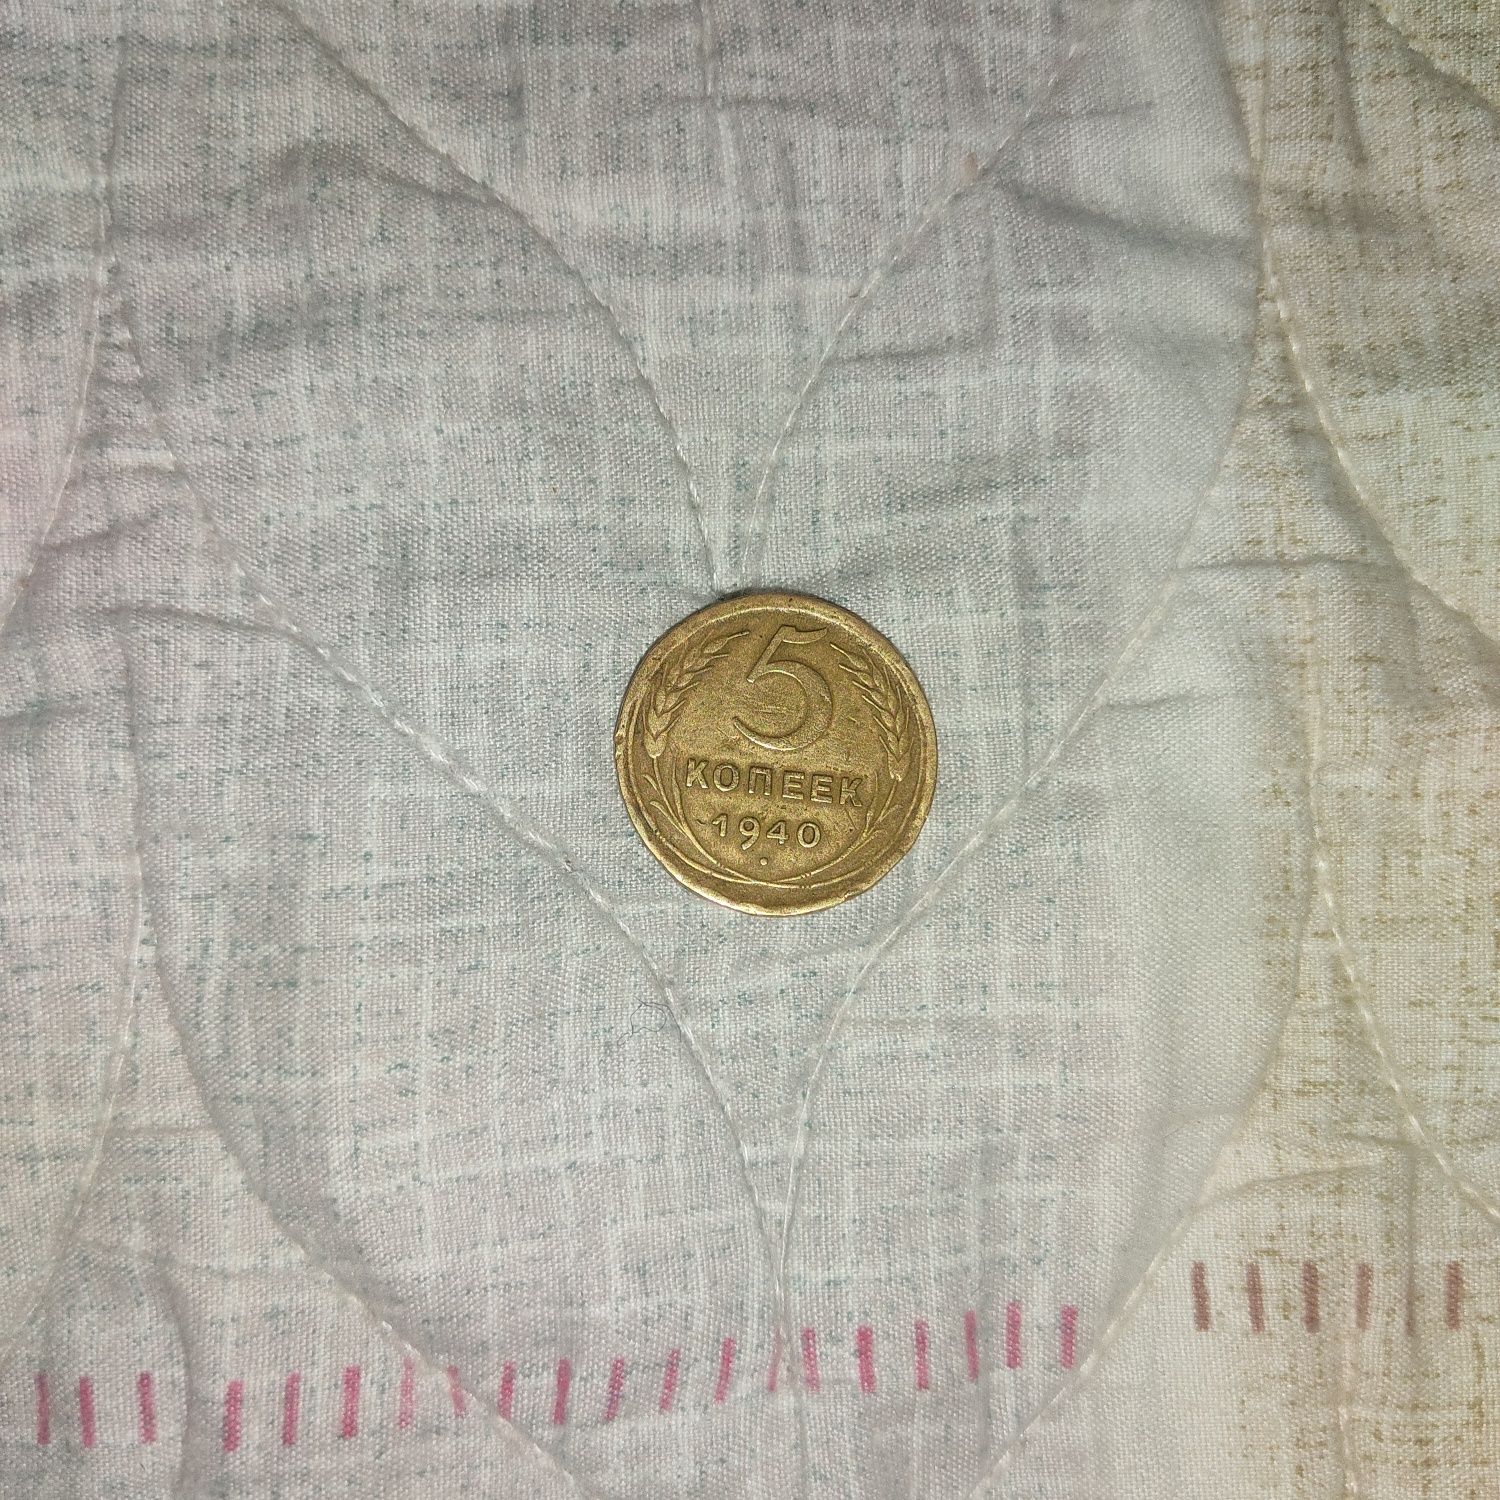 Монета СССР  пятикопеечная 1940г